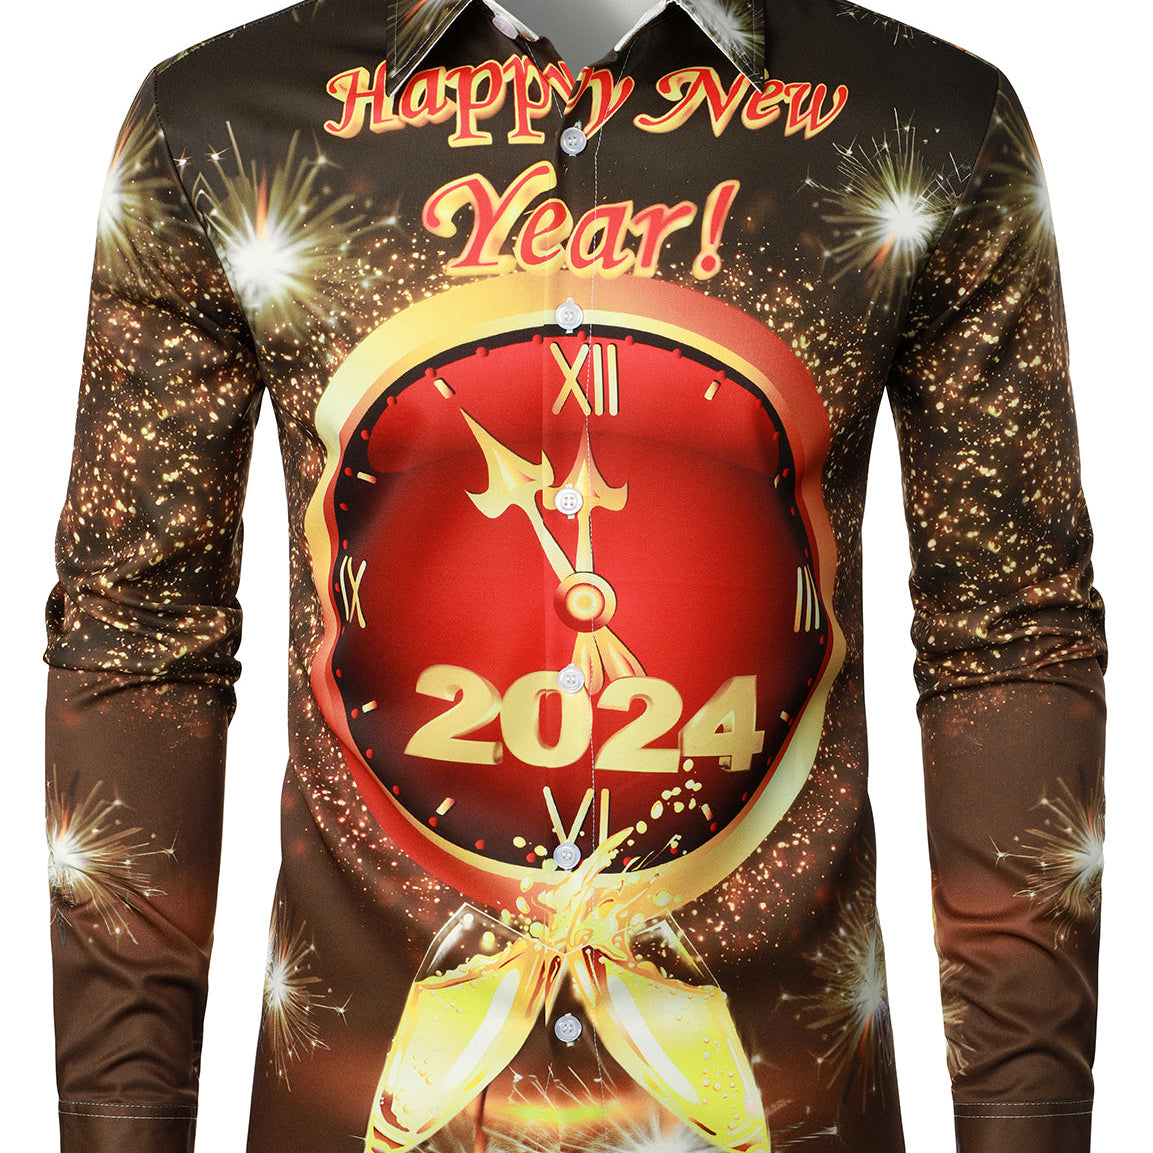 Camisa de manga larga con botones para hombre, diseño de feliz año nuevo, divertido reloj de cuenta atrás 2024